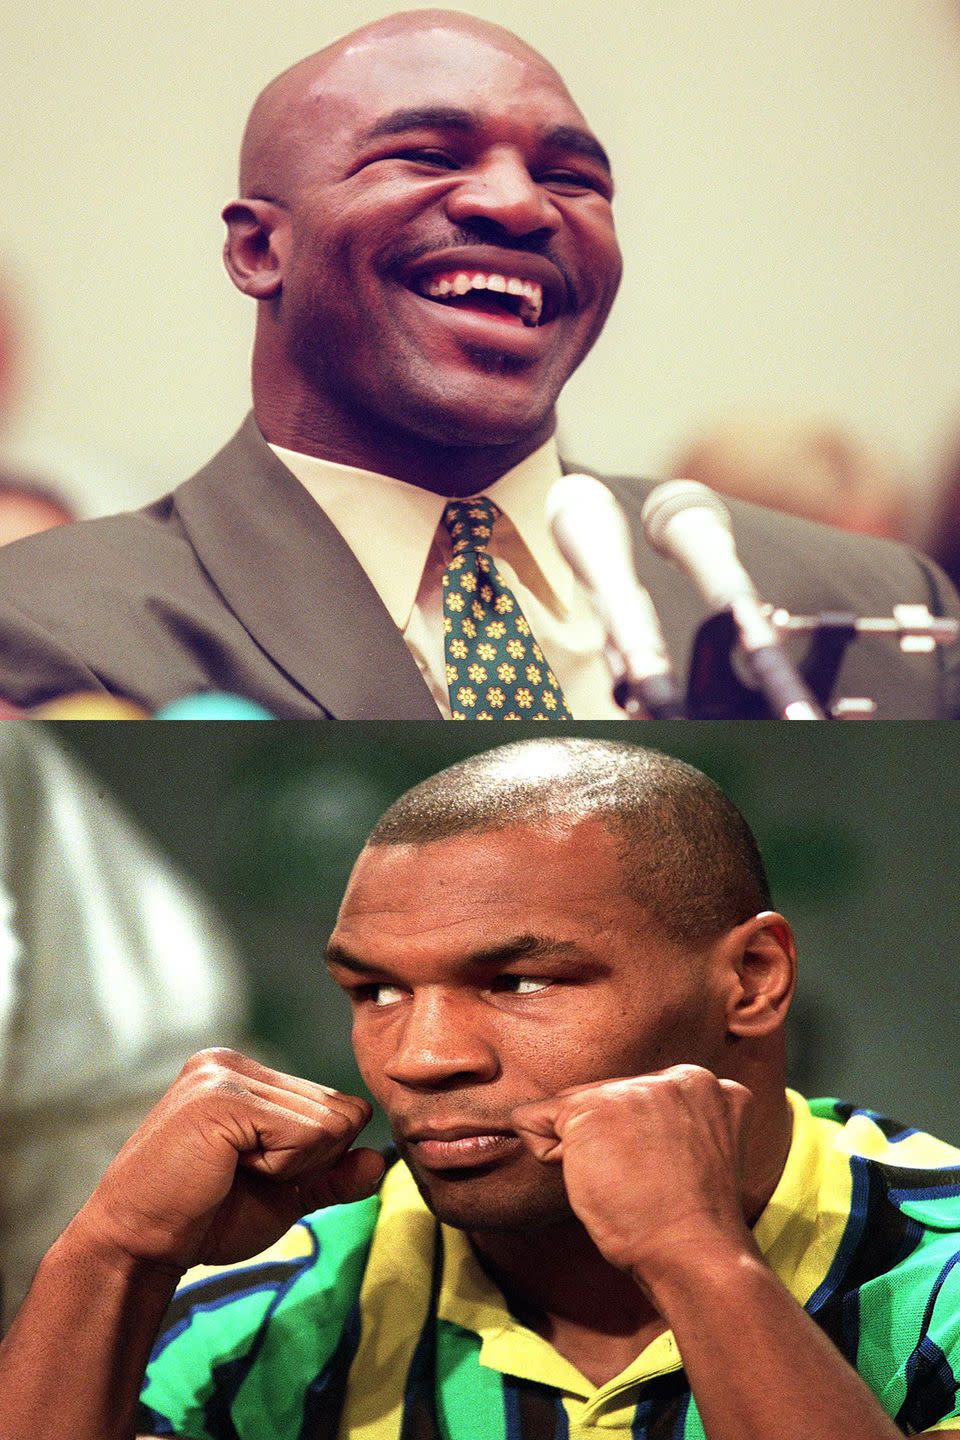 1997: Evander Holyfield vs. Mike Tyson